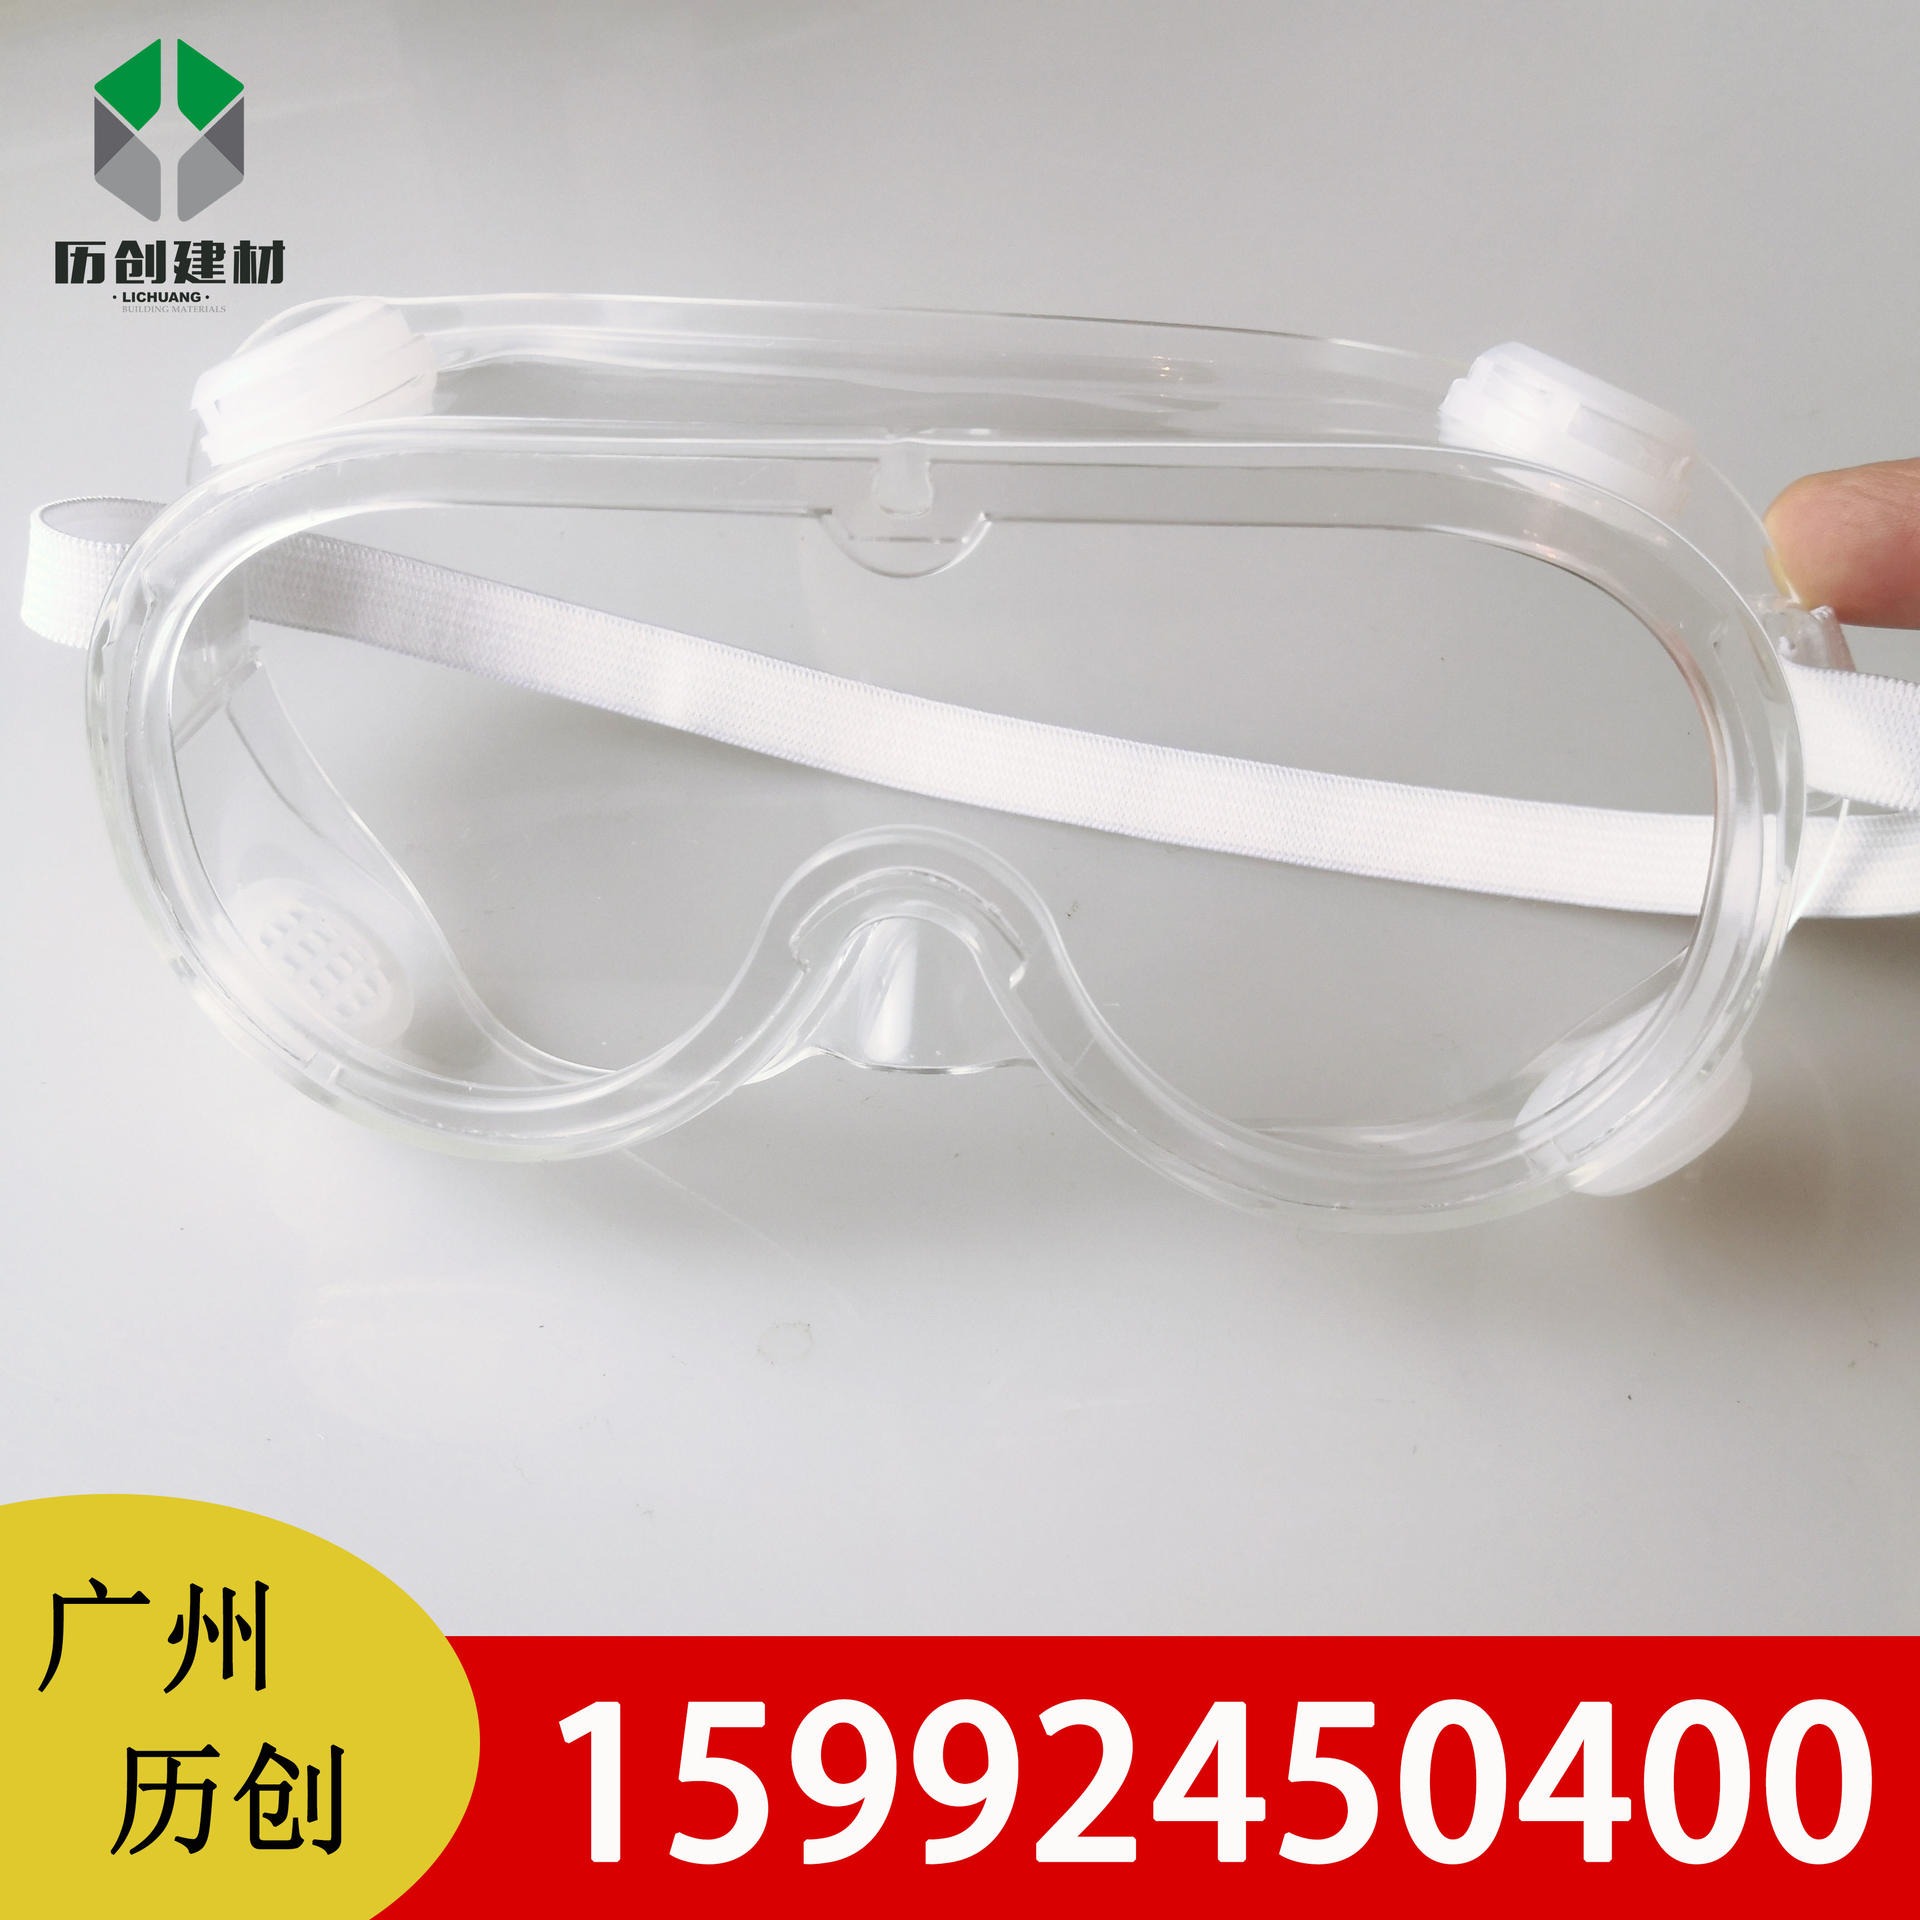 透明PC防雾板 防风眼镜加工 防尘防风沙 隔离眼罩 透明视窗 质保十年 可定制图片